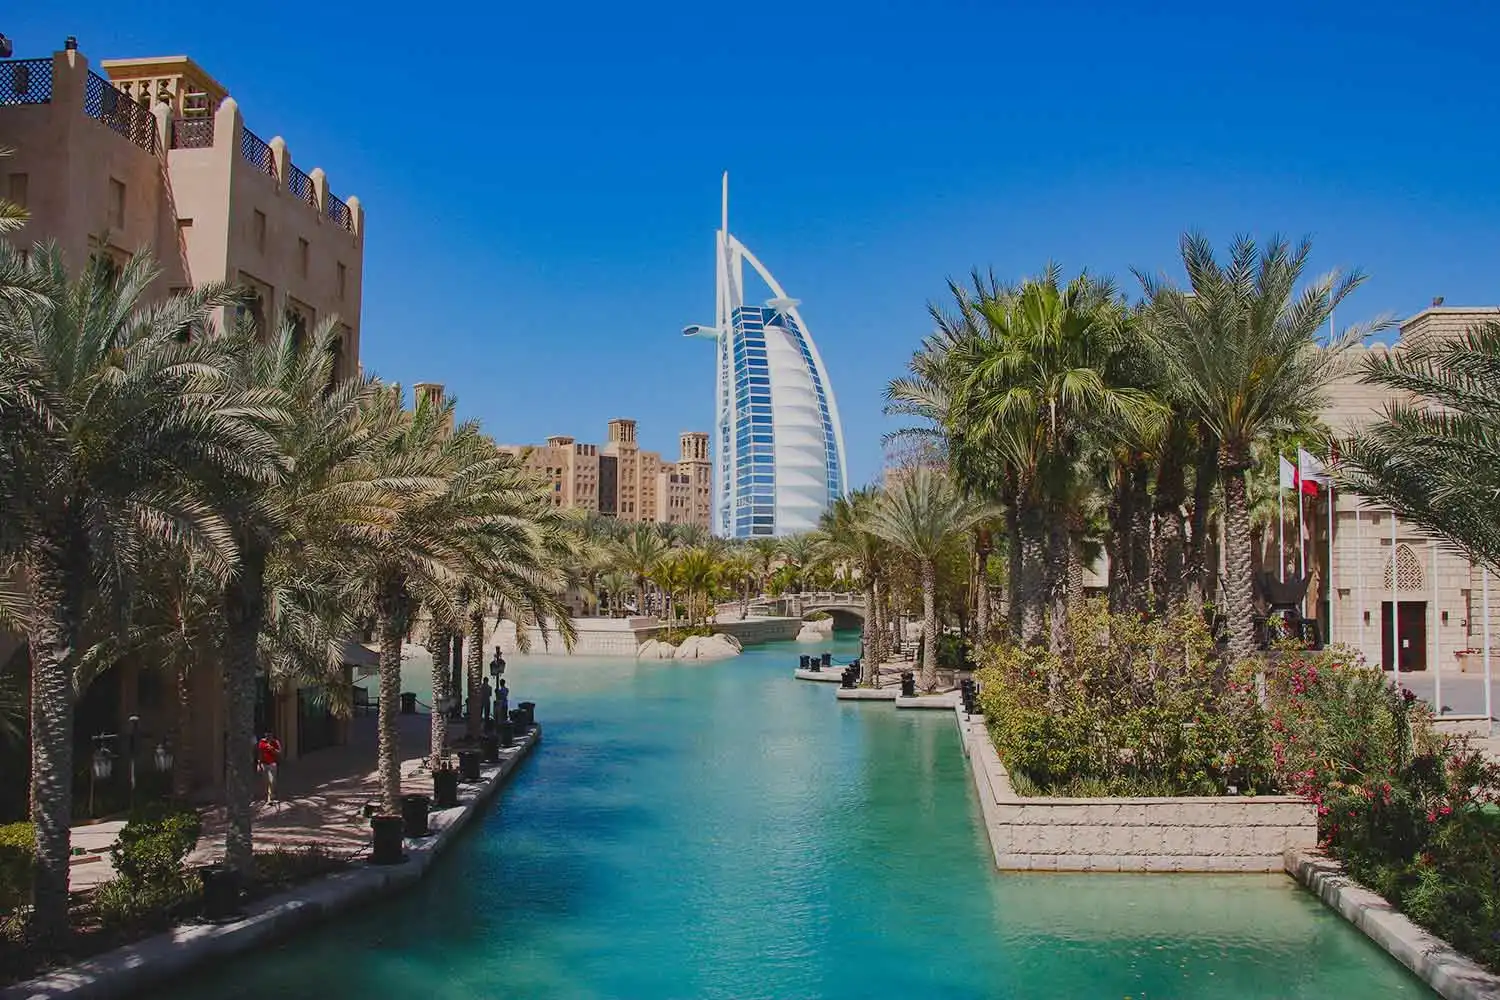 Vue sur l'hôtel Burj Al Arab à Dubaï, entouré de palmiers et d'un canal d'eau turquoise